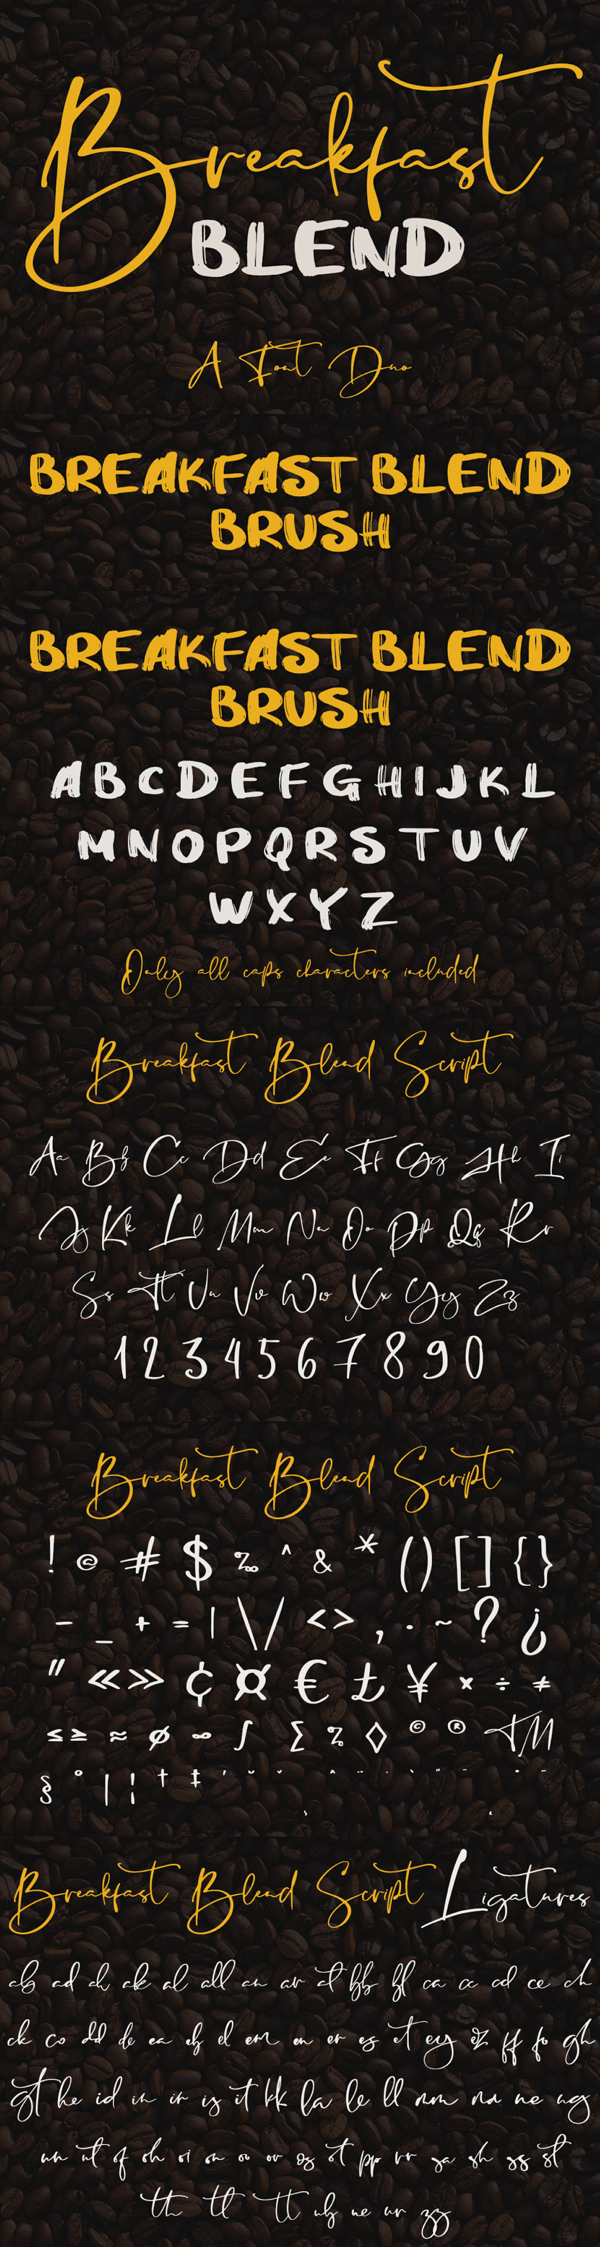 Breakfast Blend Brush Free Font